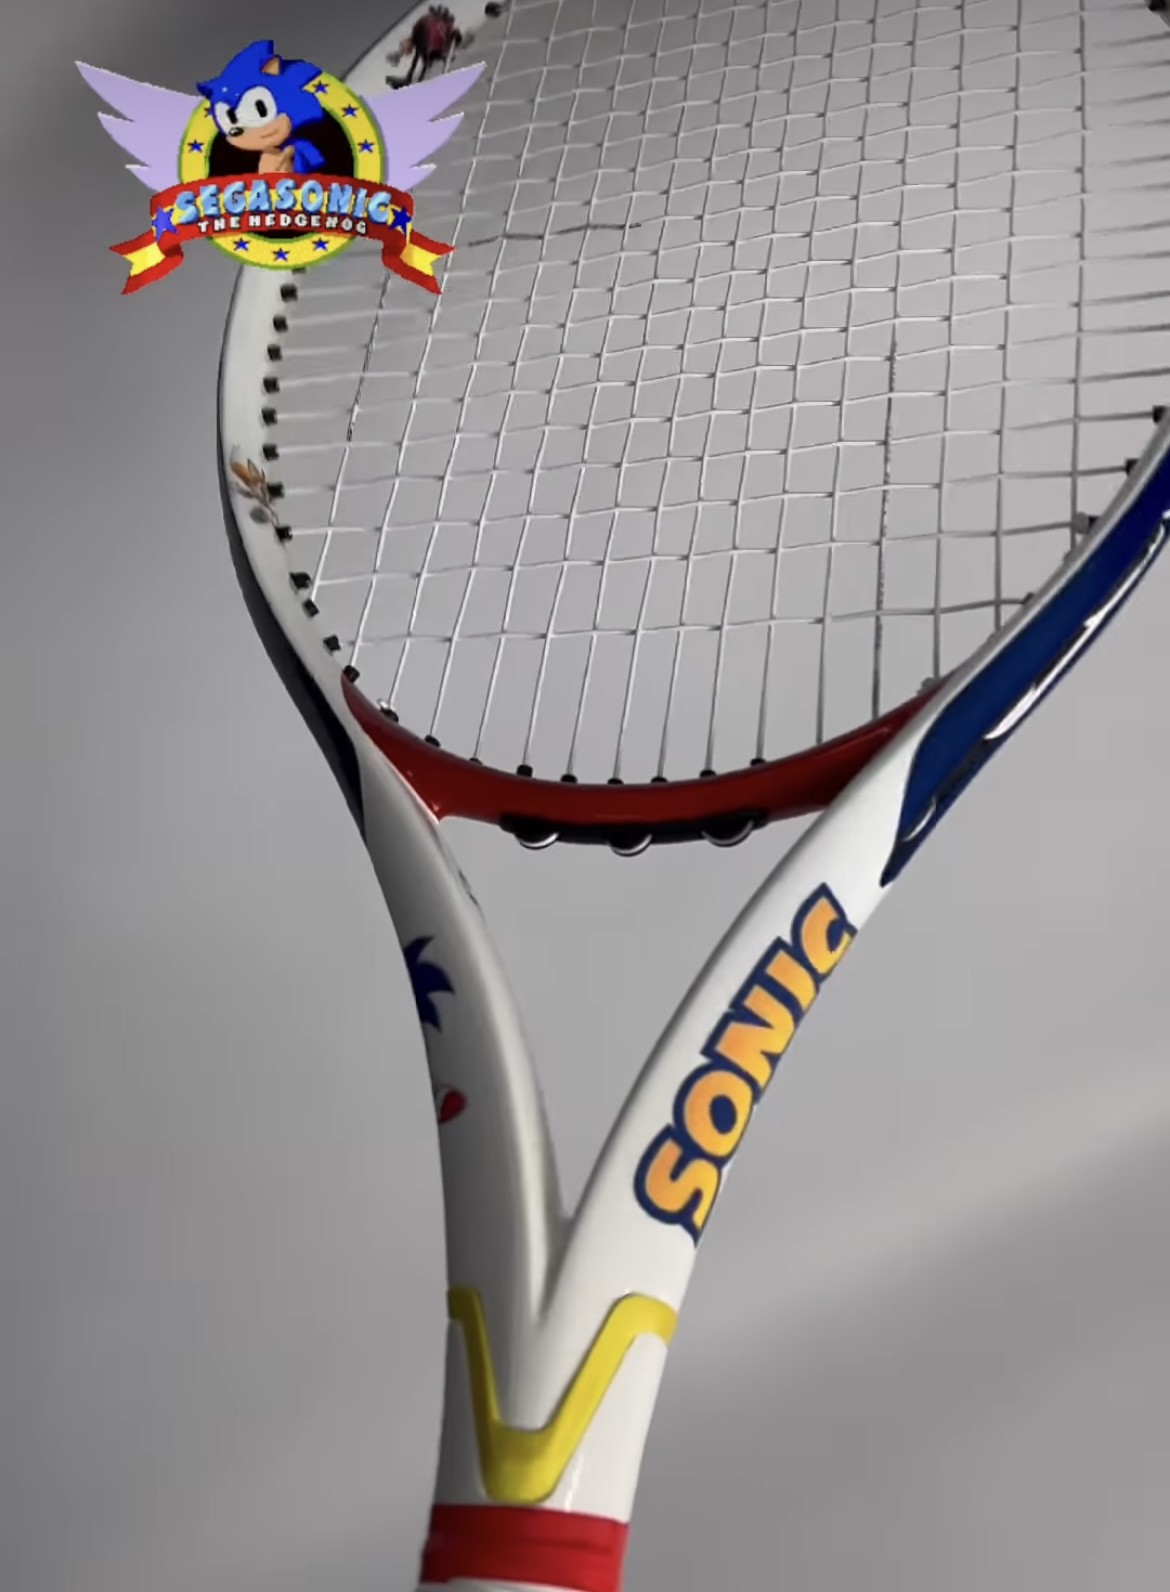 Get your racquets painted - Tennisnerd.net